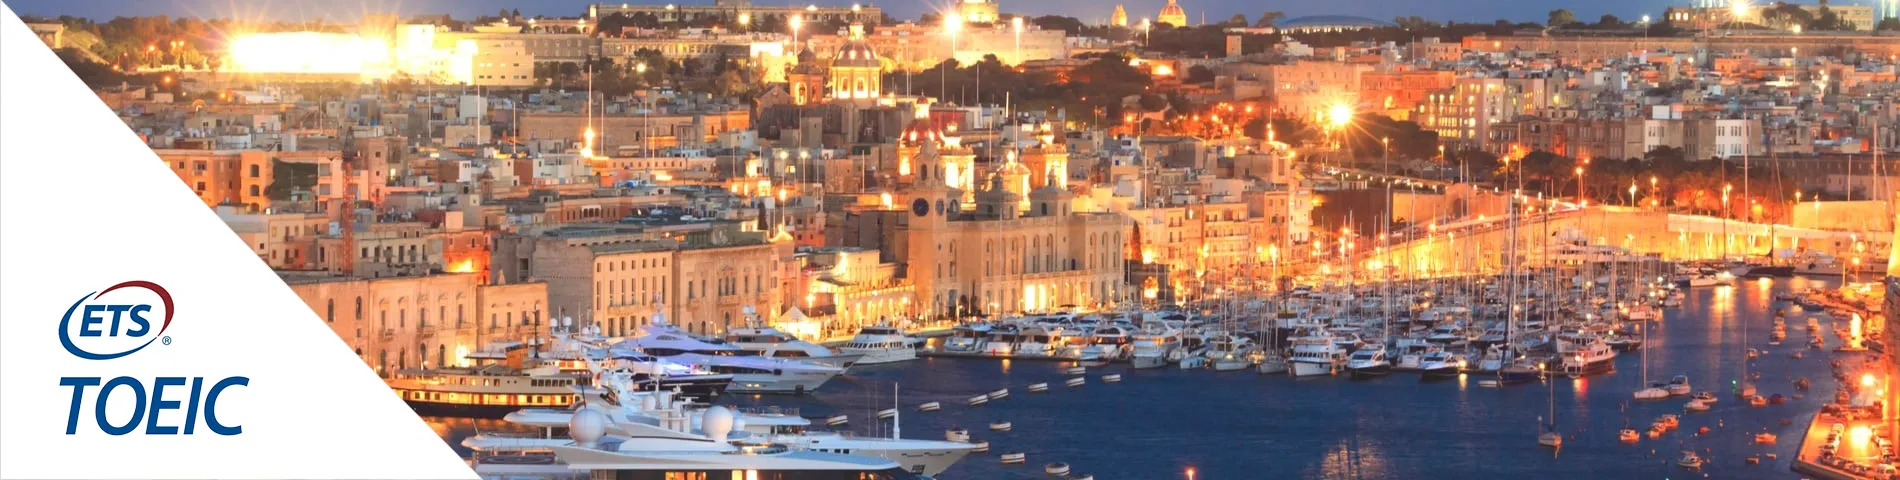 Valletta - TOEIC